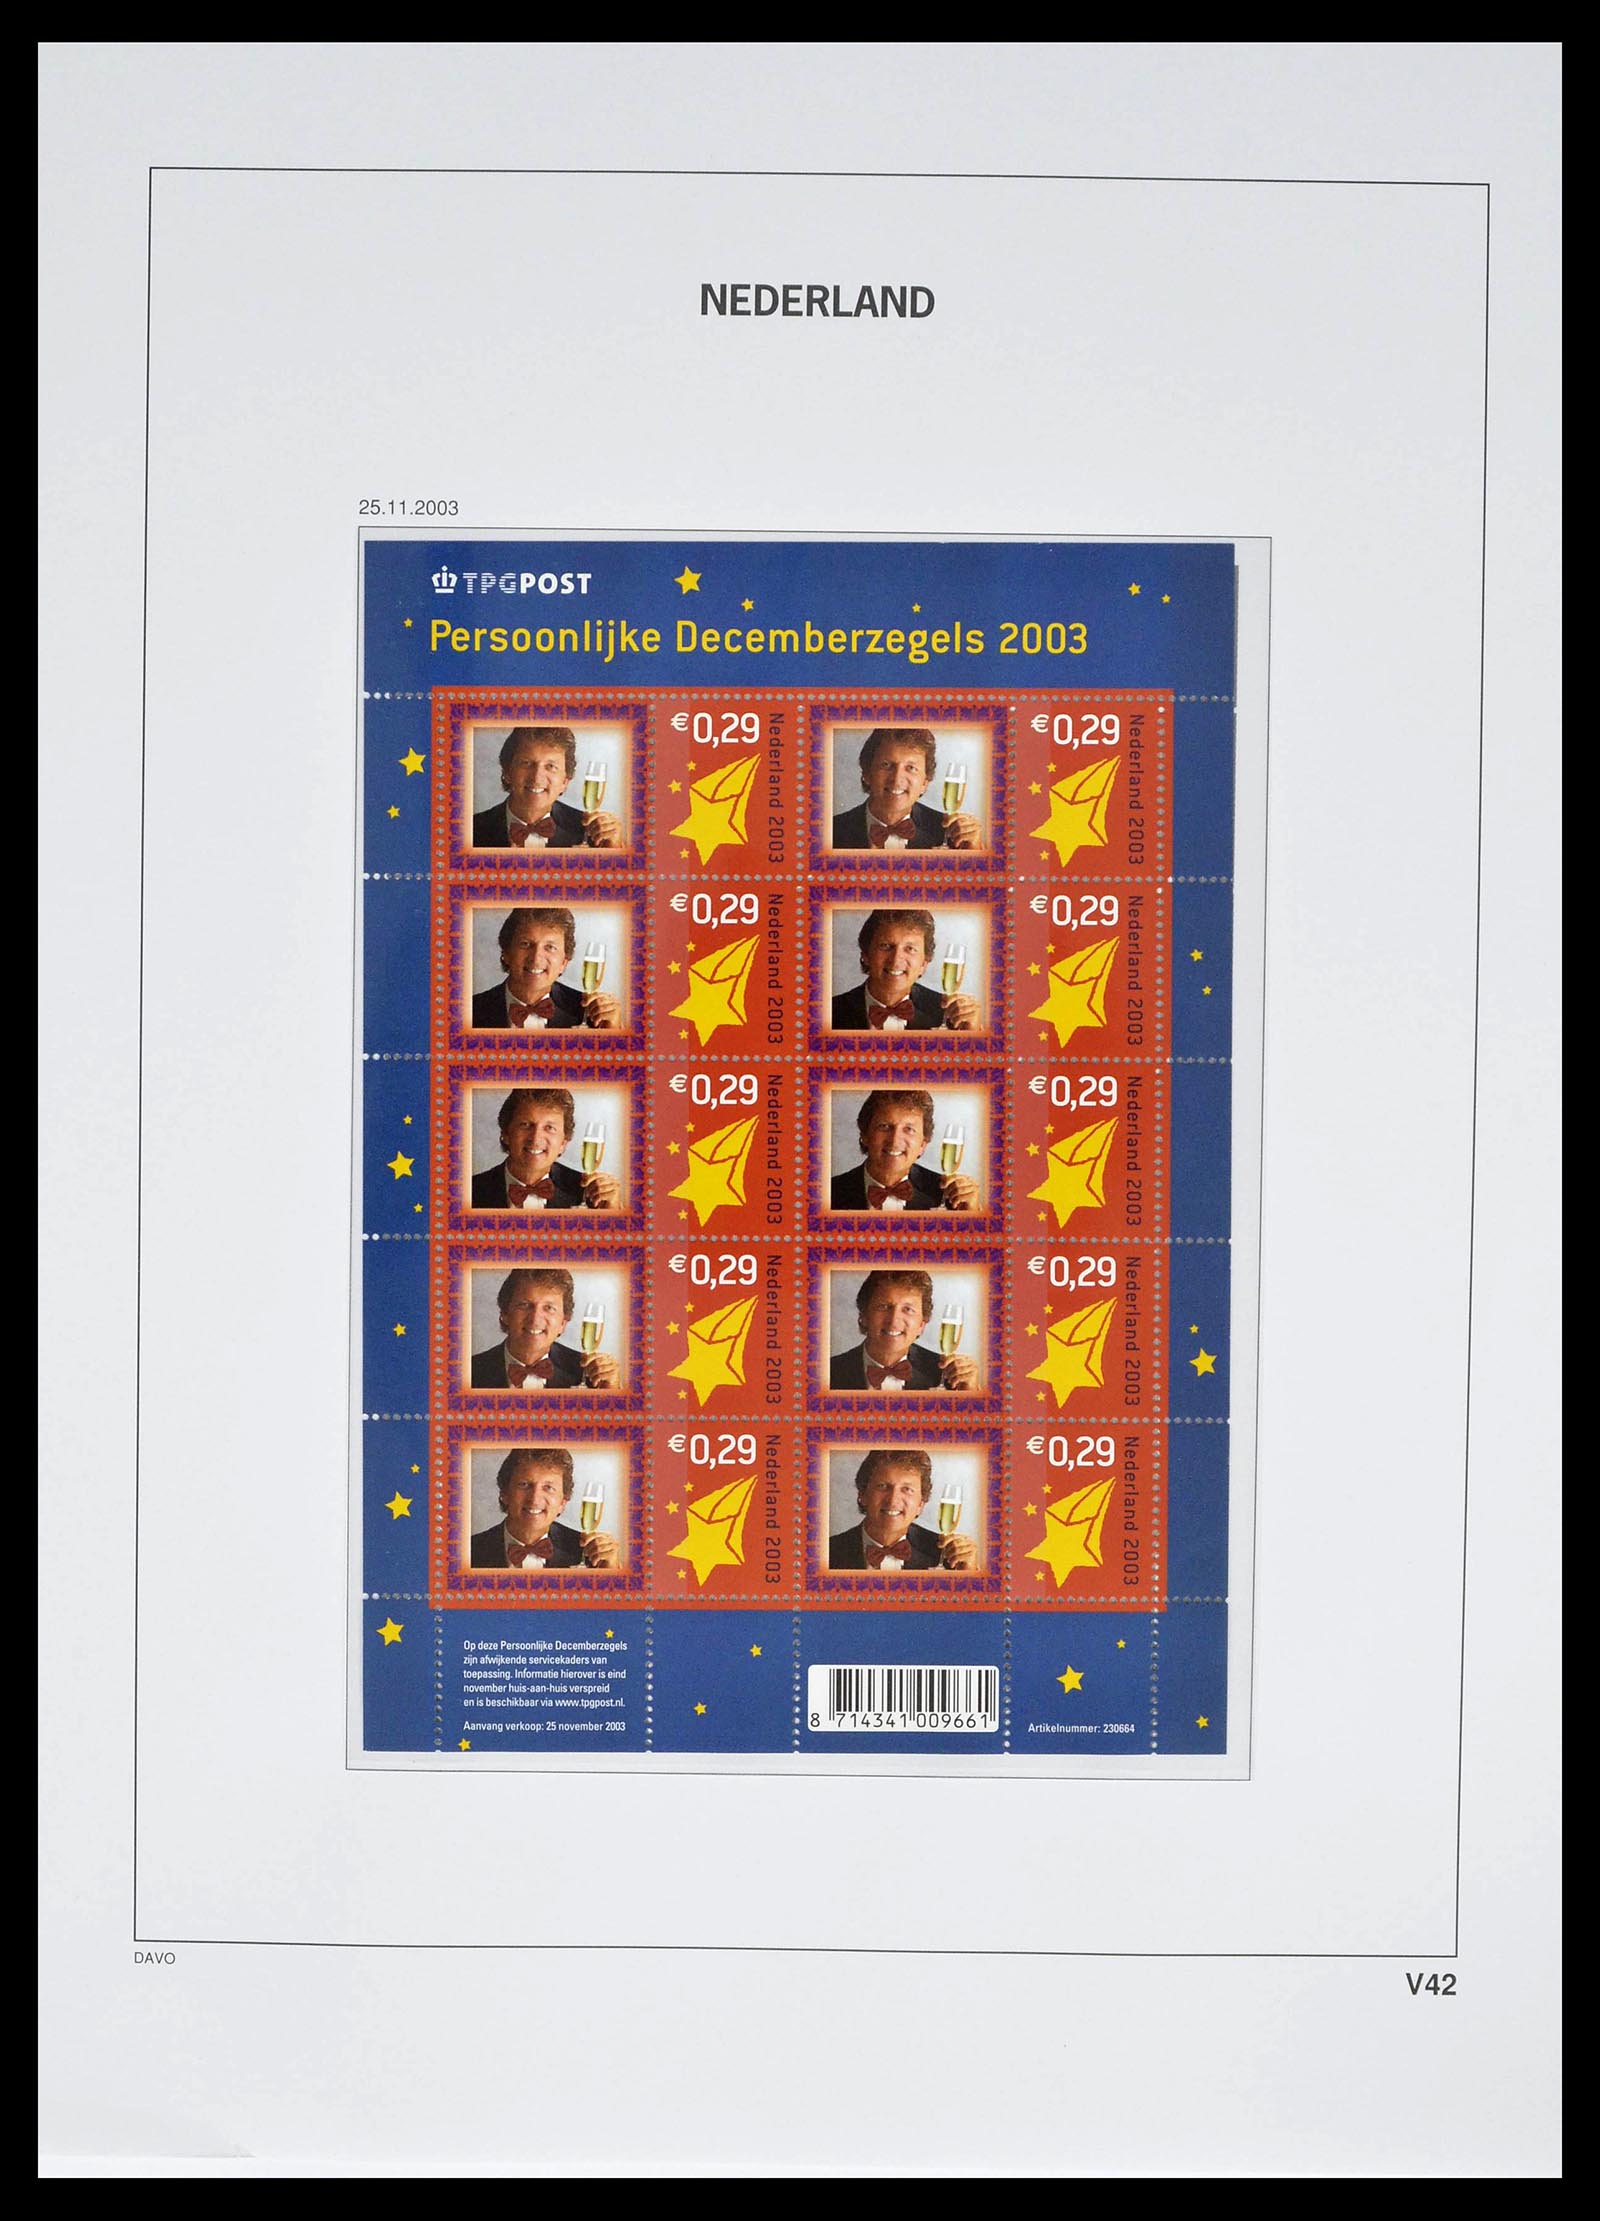 39134 0056 - Stamp collection 39134 Netherlands sheetlets 1992-2019!